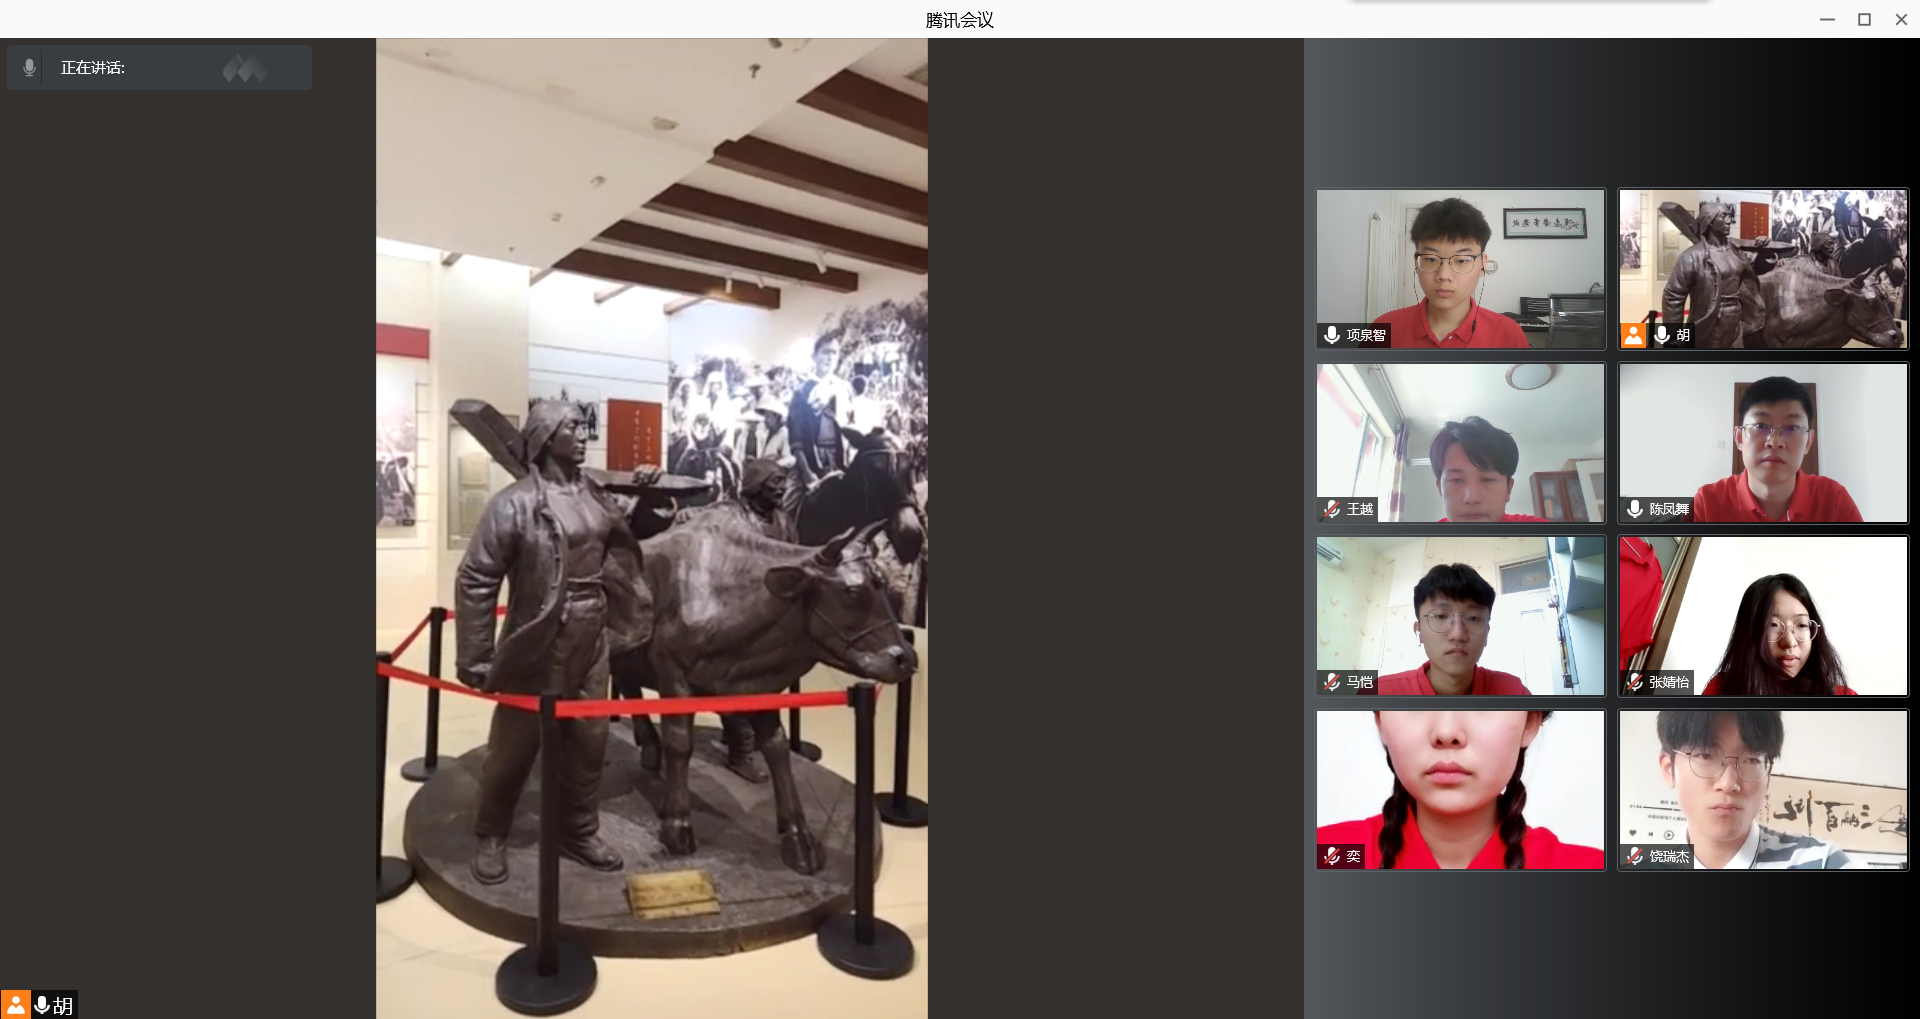 图为实践队参观西柏坡纪念馆中的雕塑作品《喜悦》。项泉智 供图